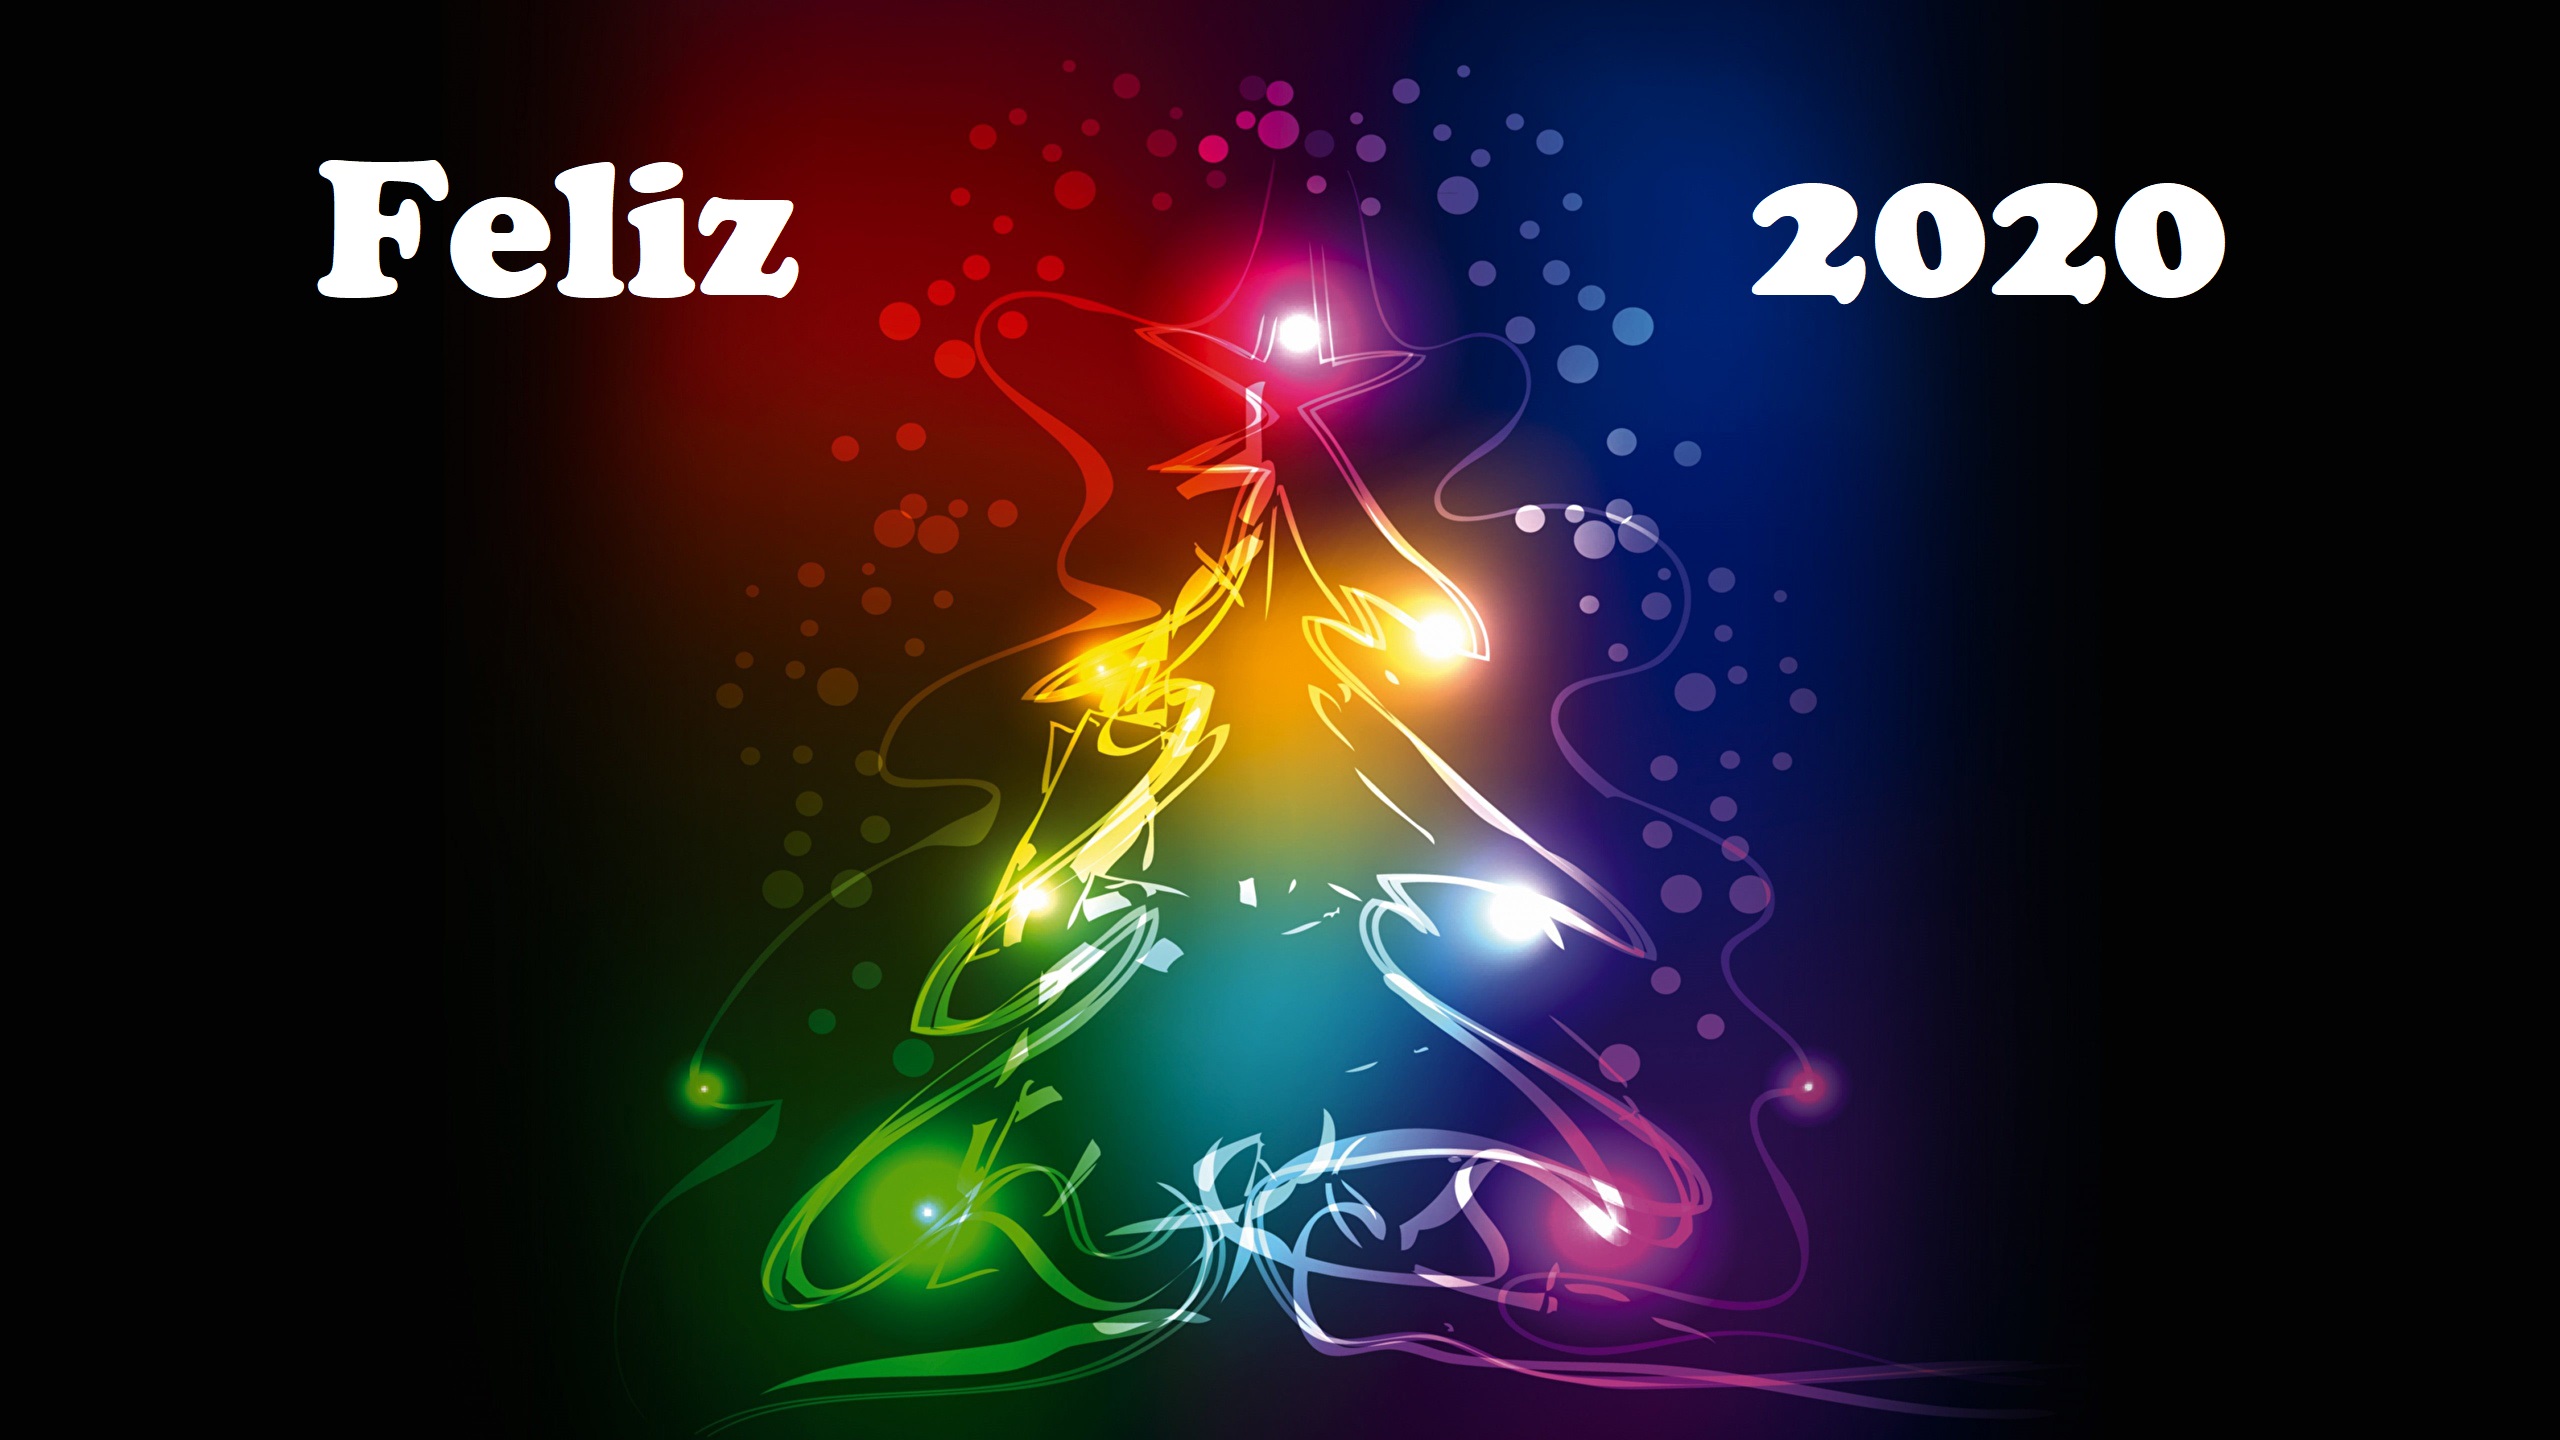 Скачать обои бесплатно Рождественская Елка, Праздничные, Новый Год 2020 картинка на рабочий стол ПК